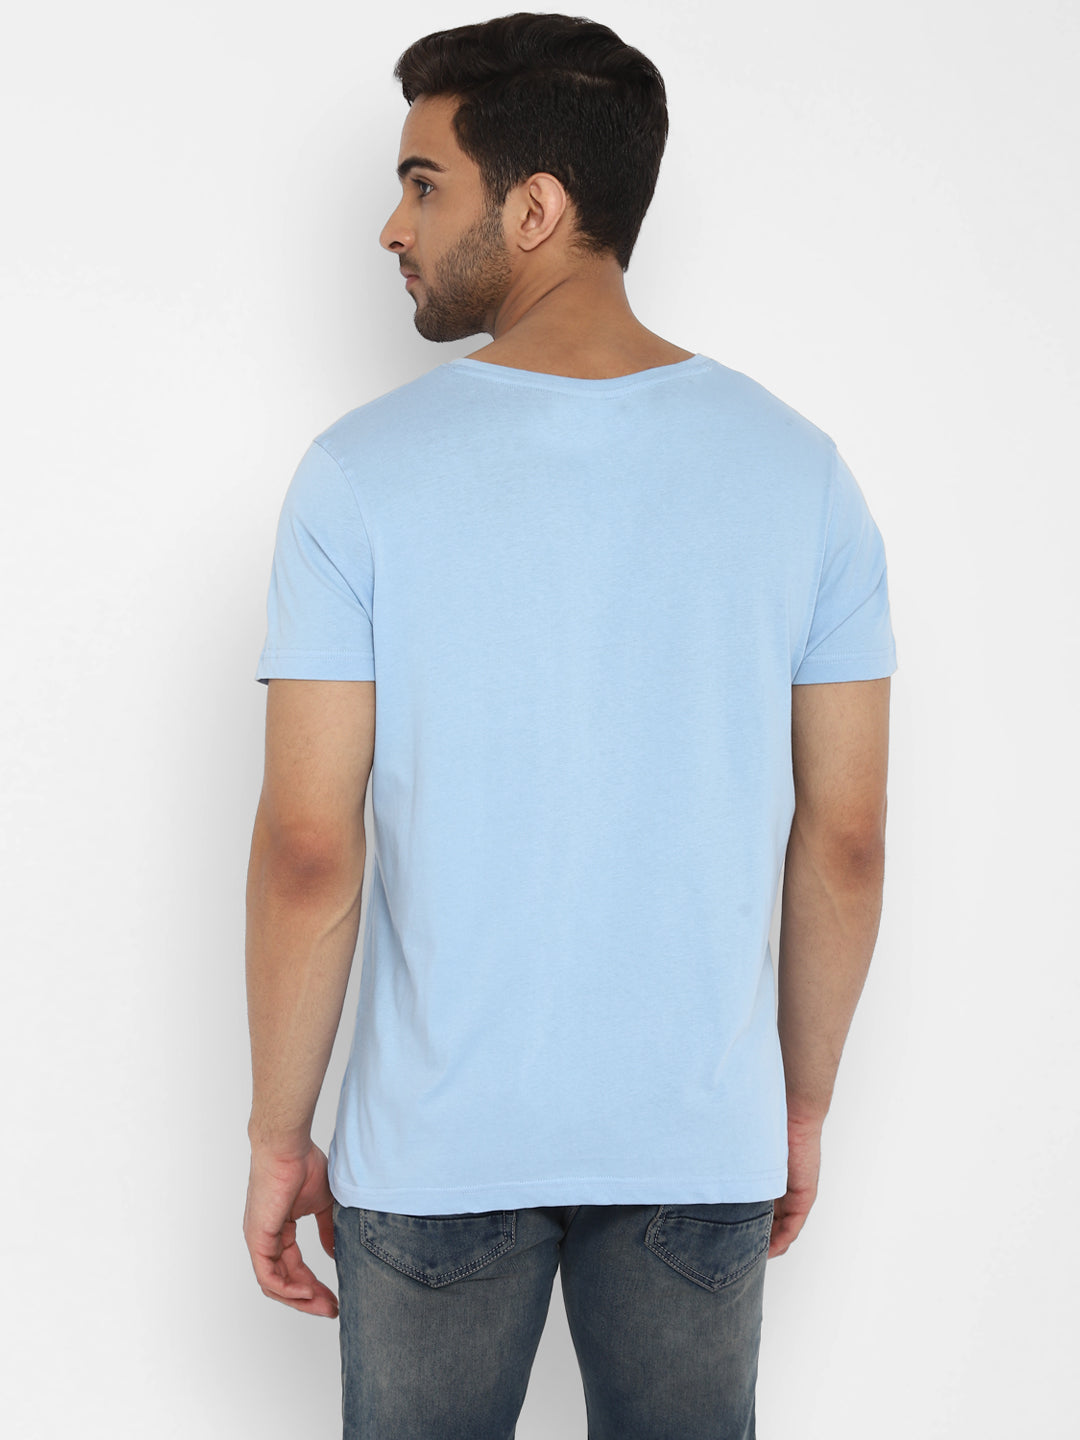 Essentials Sky Blue Solid V Neck T-Shirt